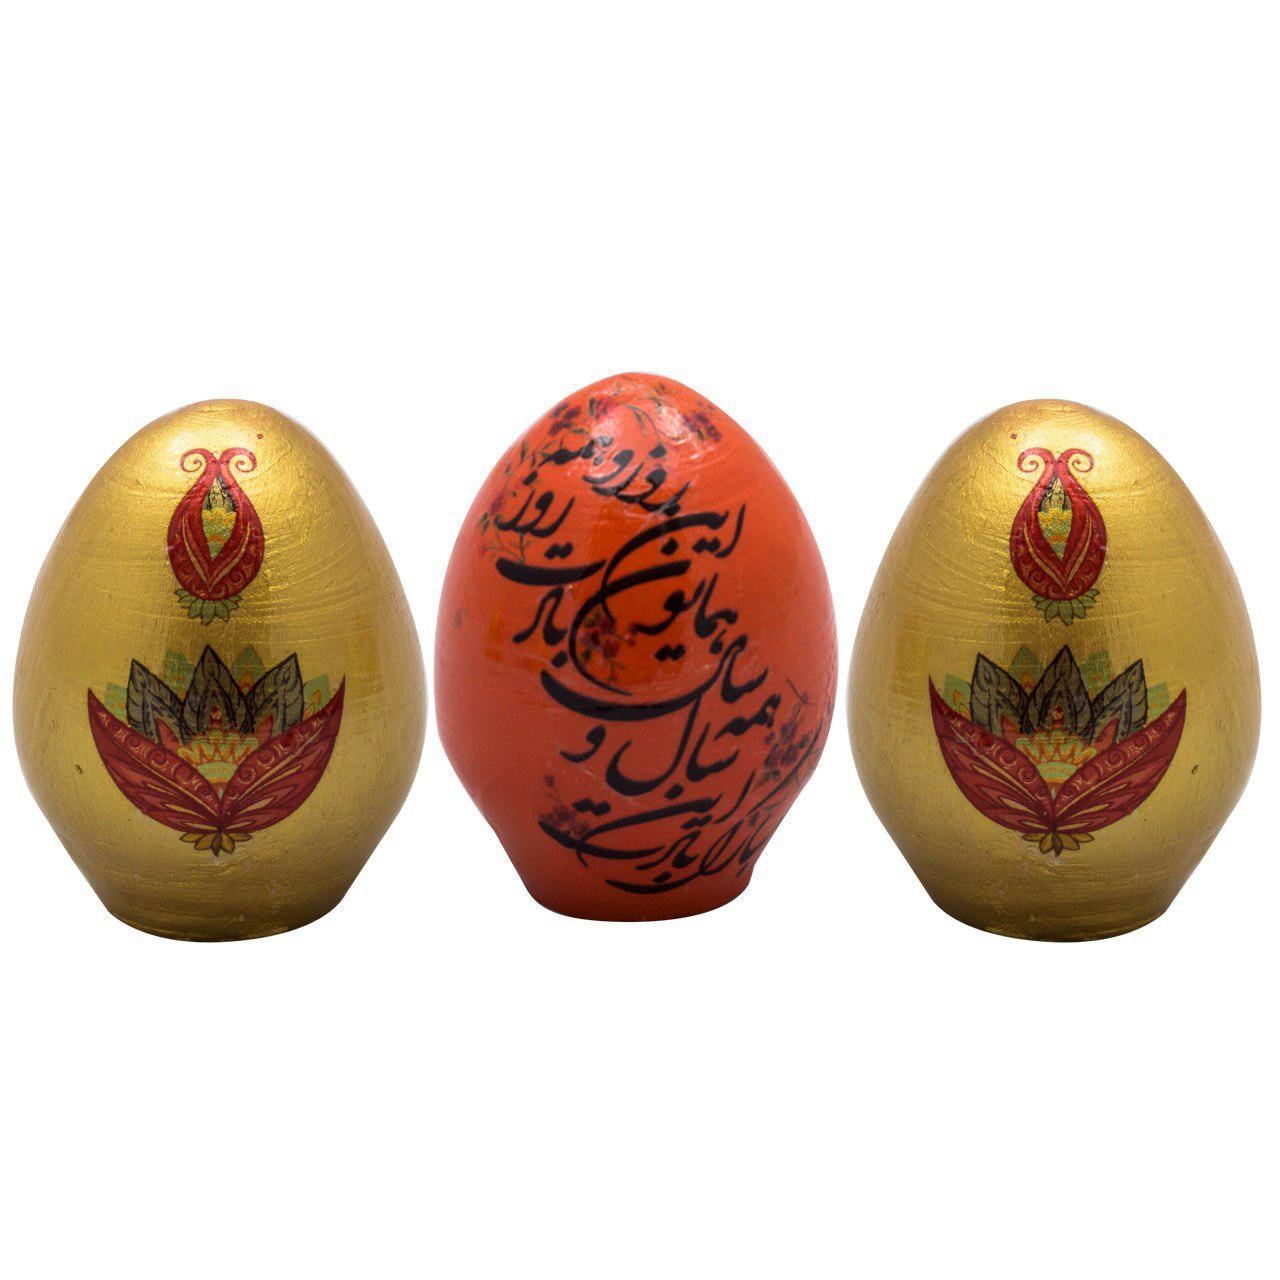 تخم مرغ تزیینی هفت سین آرت گالری مدل A3075-بسته 3 عددی